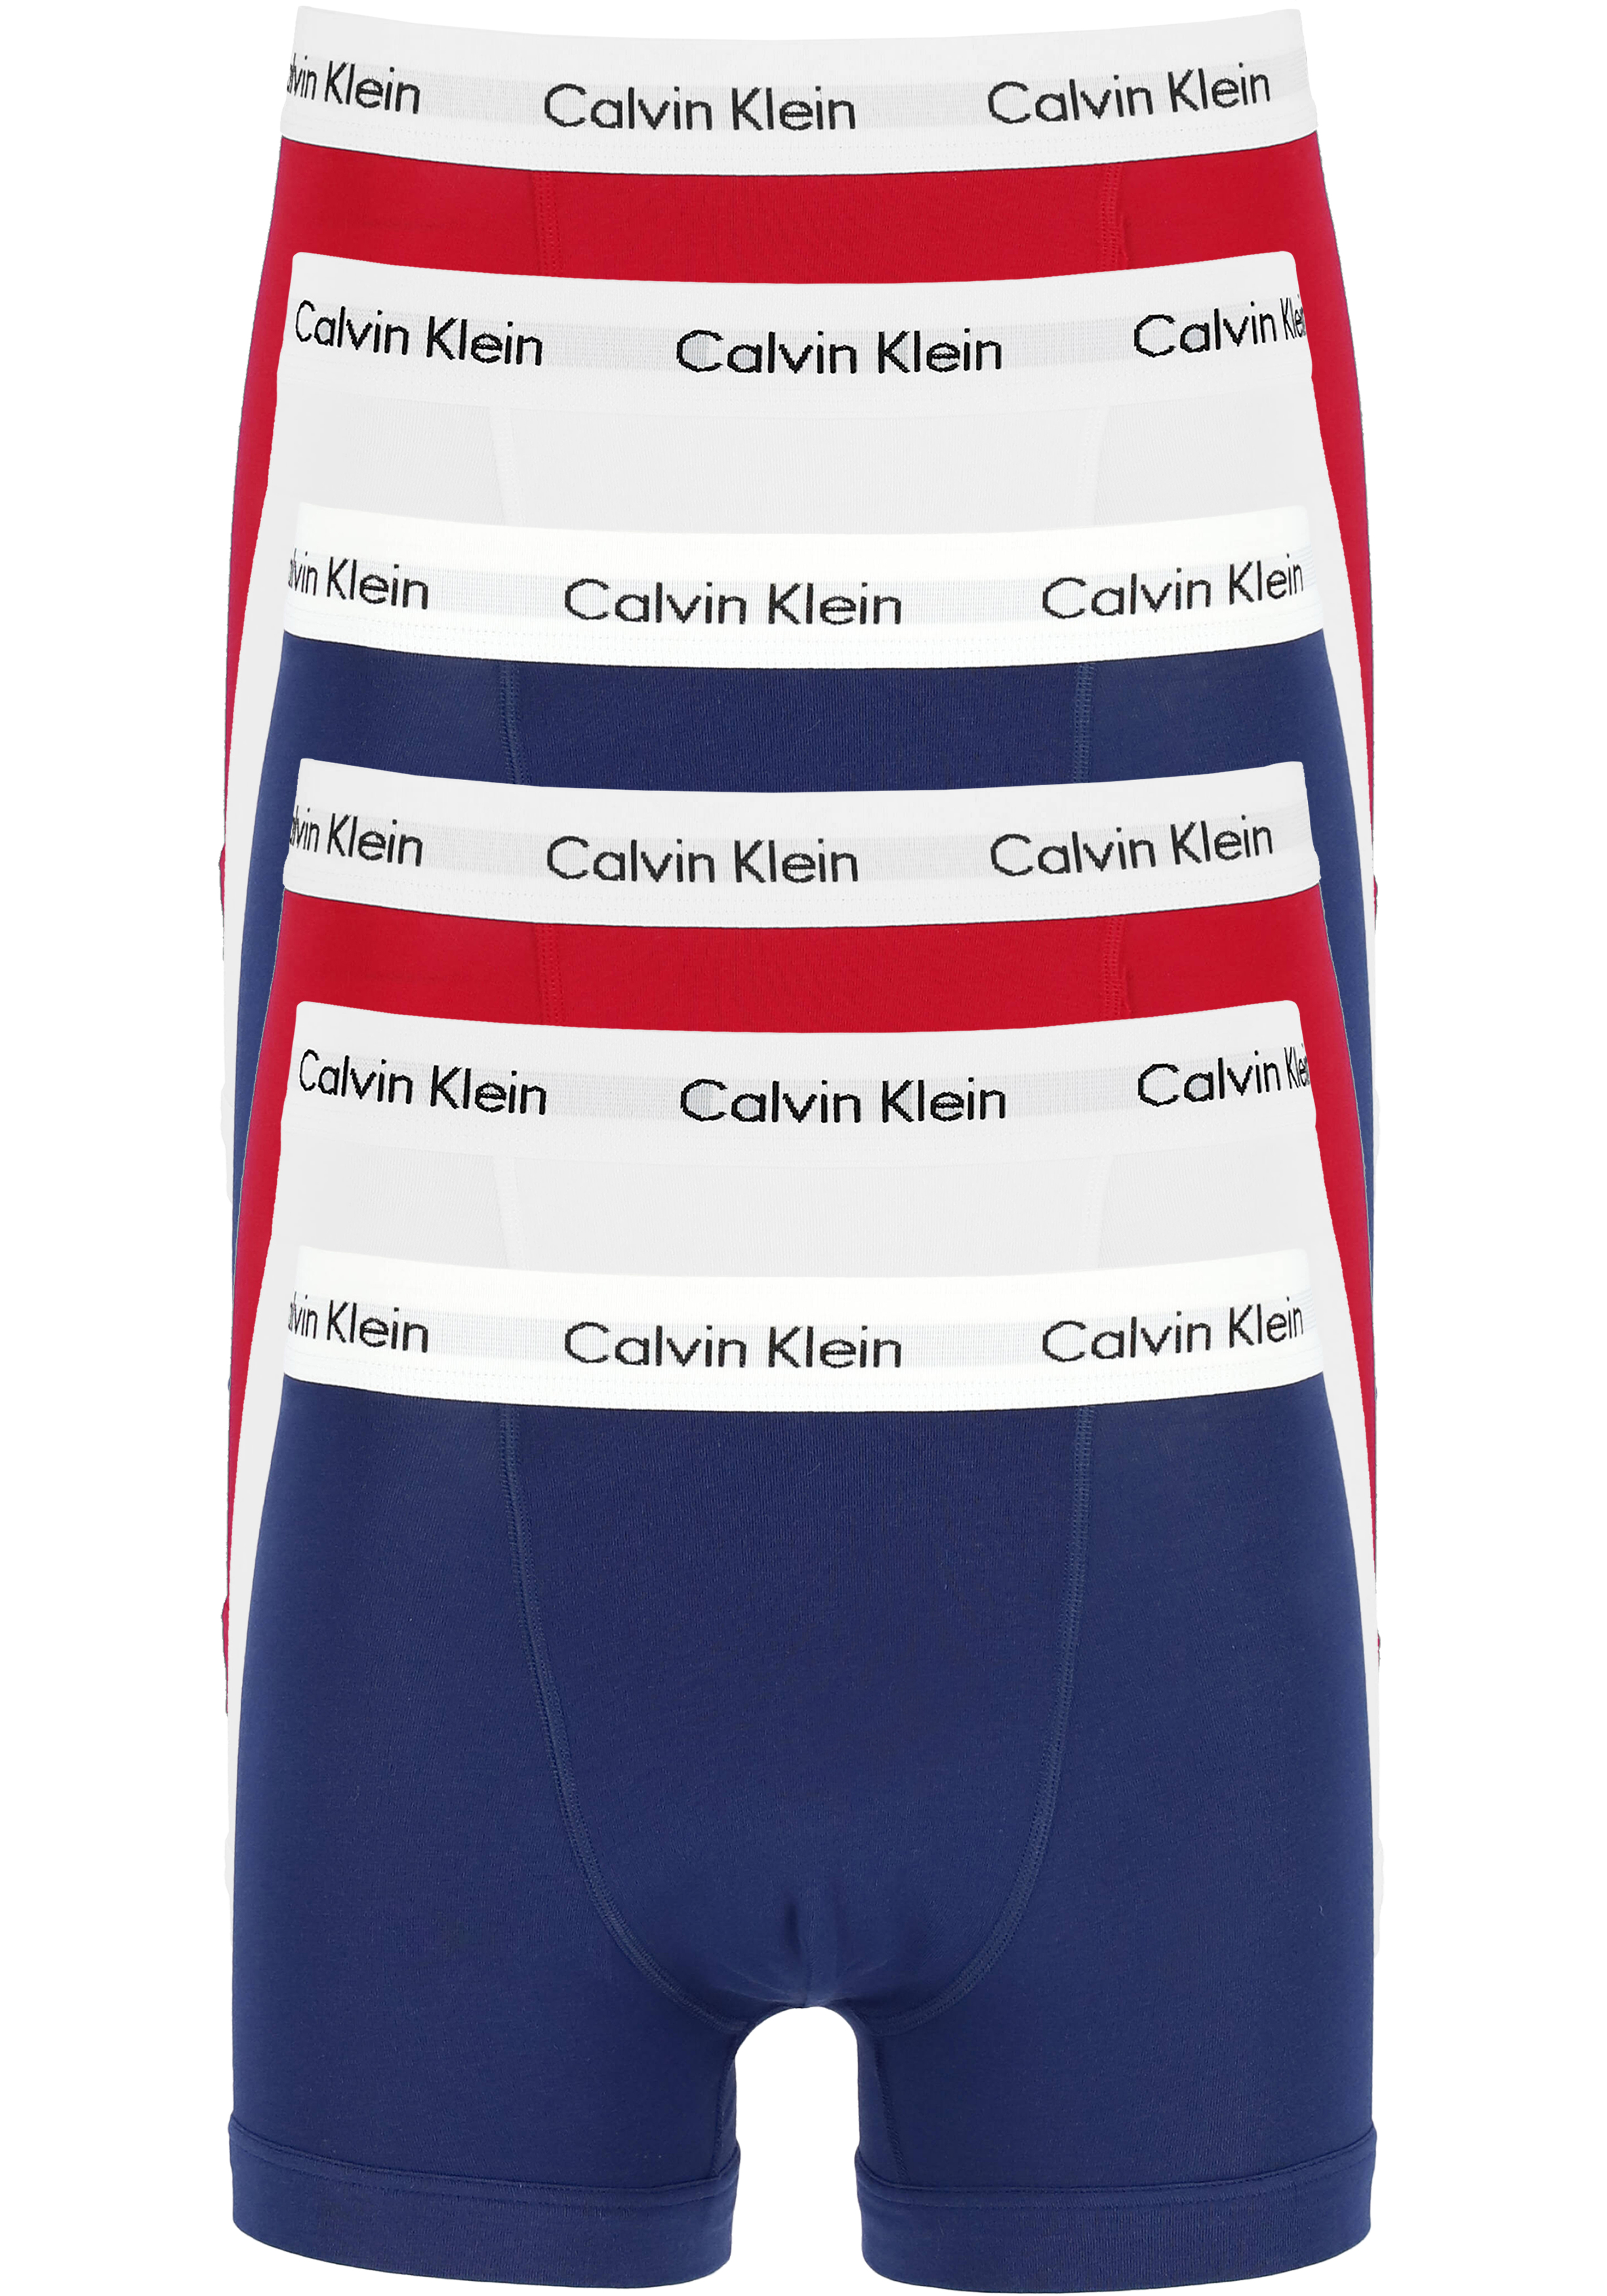 Actie 6-pack: Calvin Klein trunks, heren boxers normale lengte, rood, wit en blauw